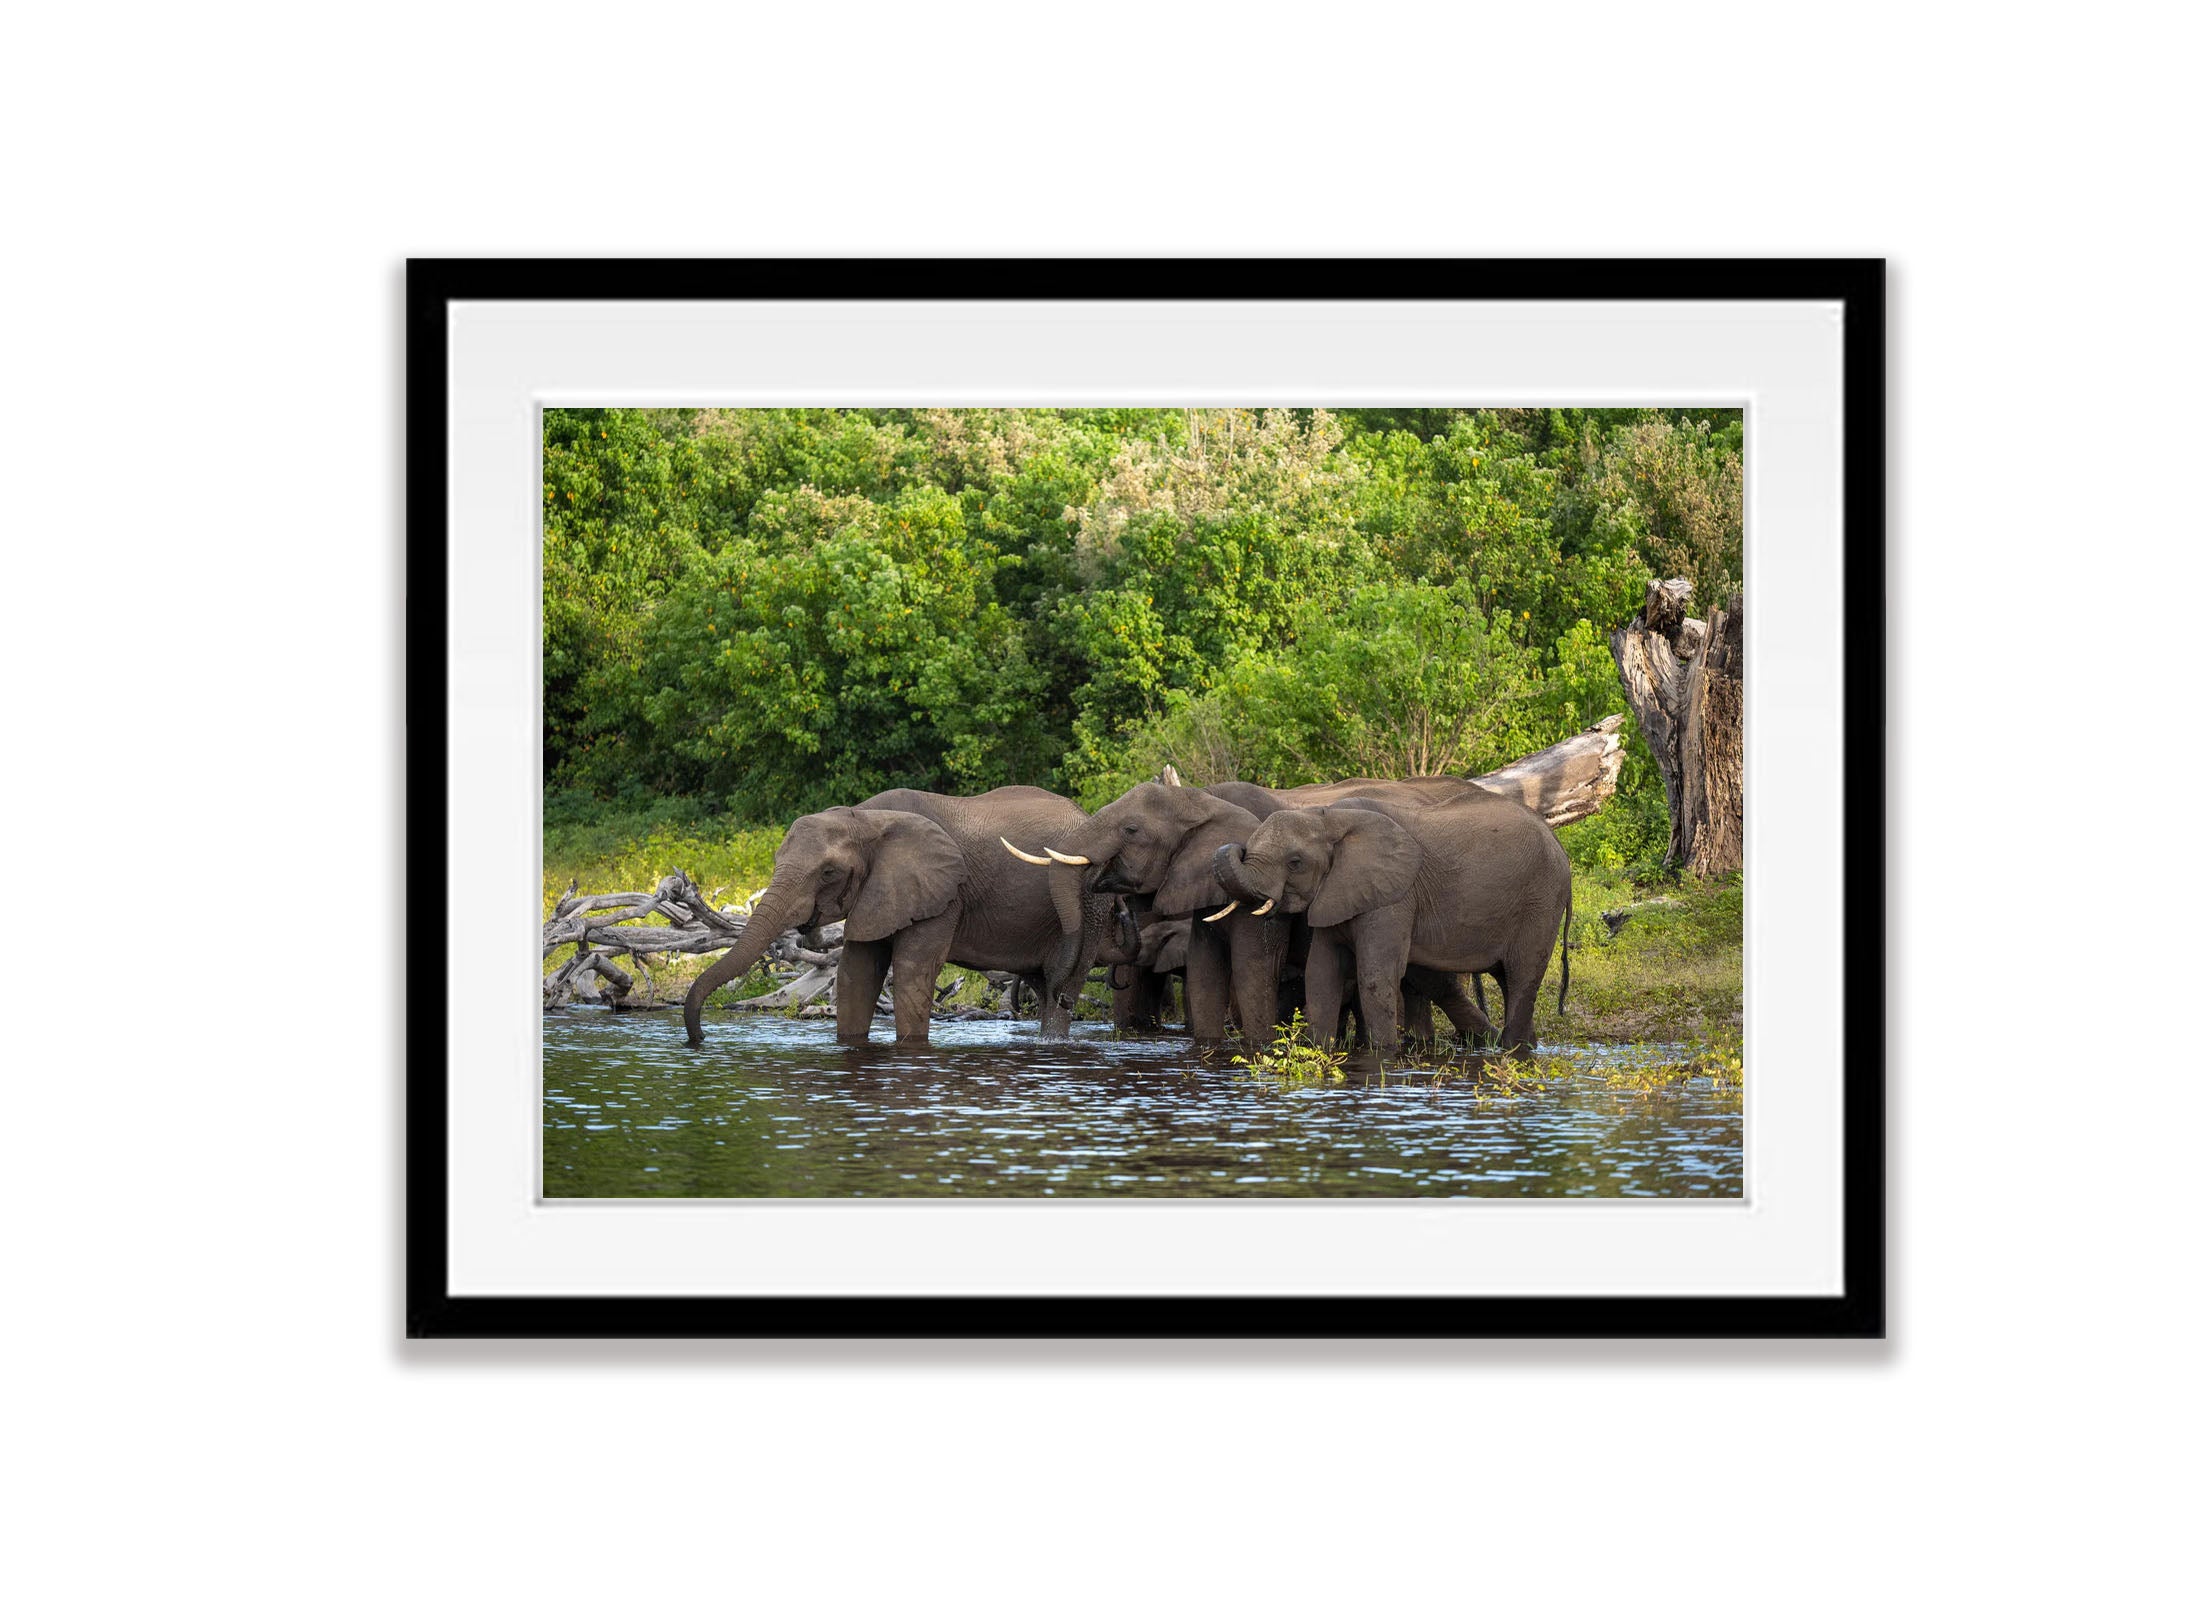 Elephants Drinking, Chobe River, Botswana